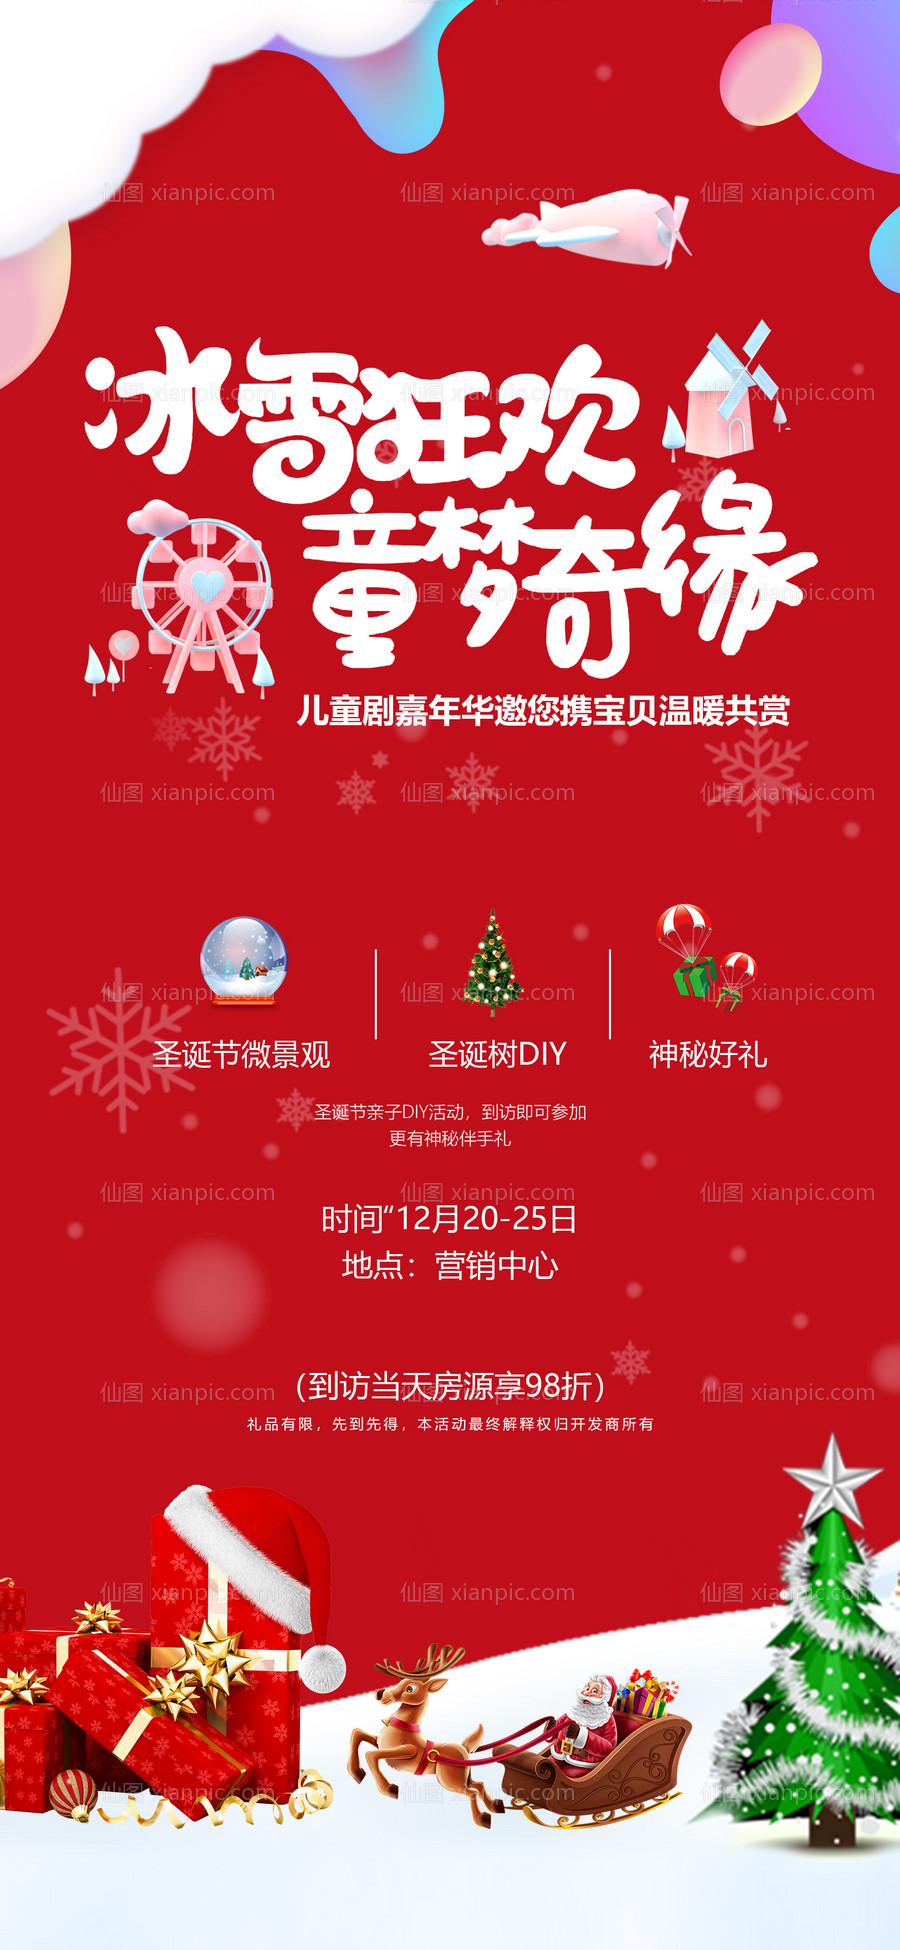 素材乐-圣诞节狂欢亲子DIY活动海报